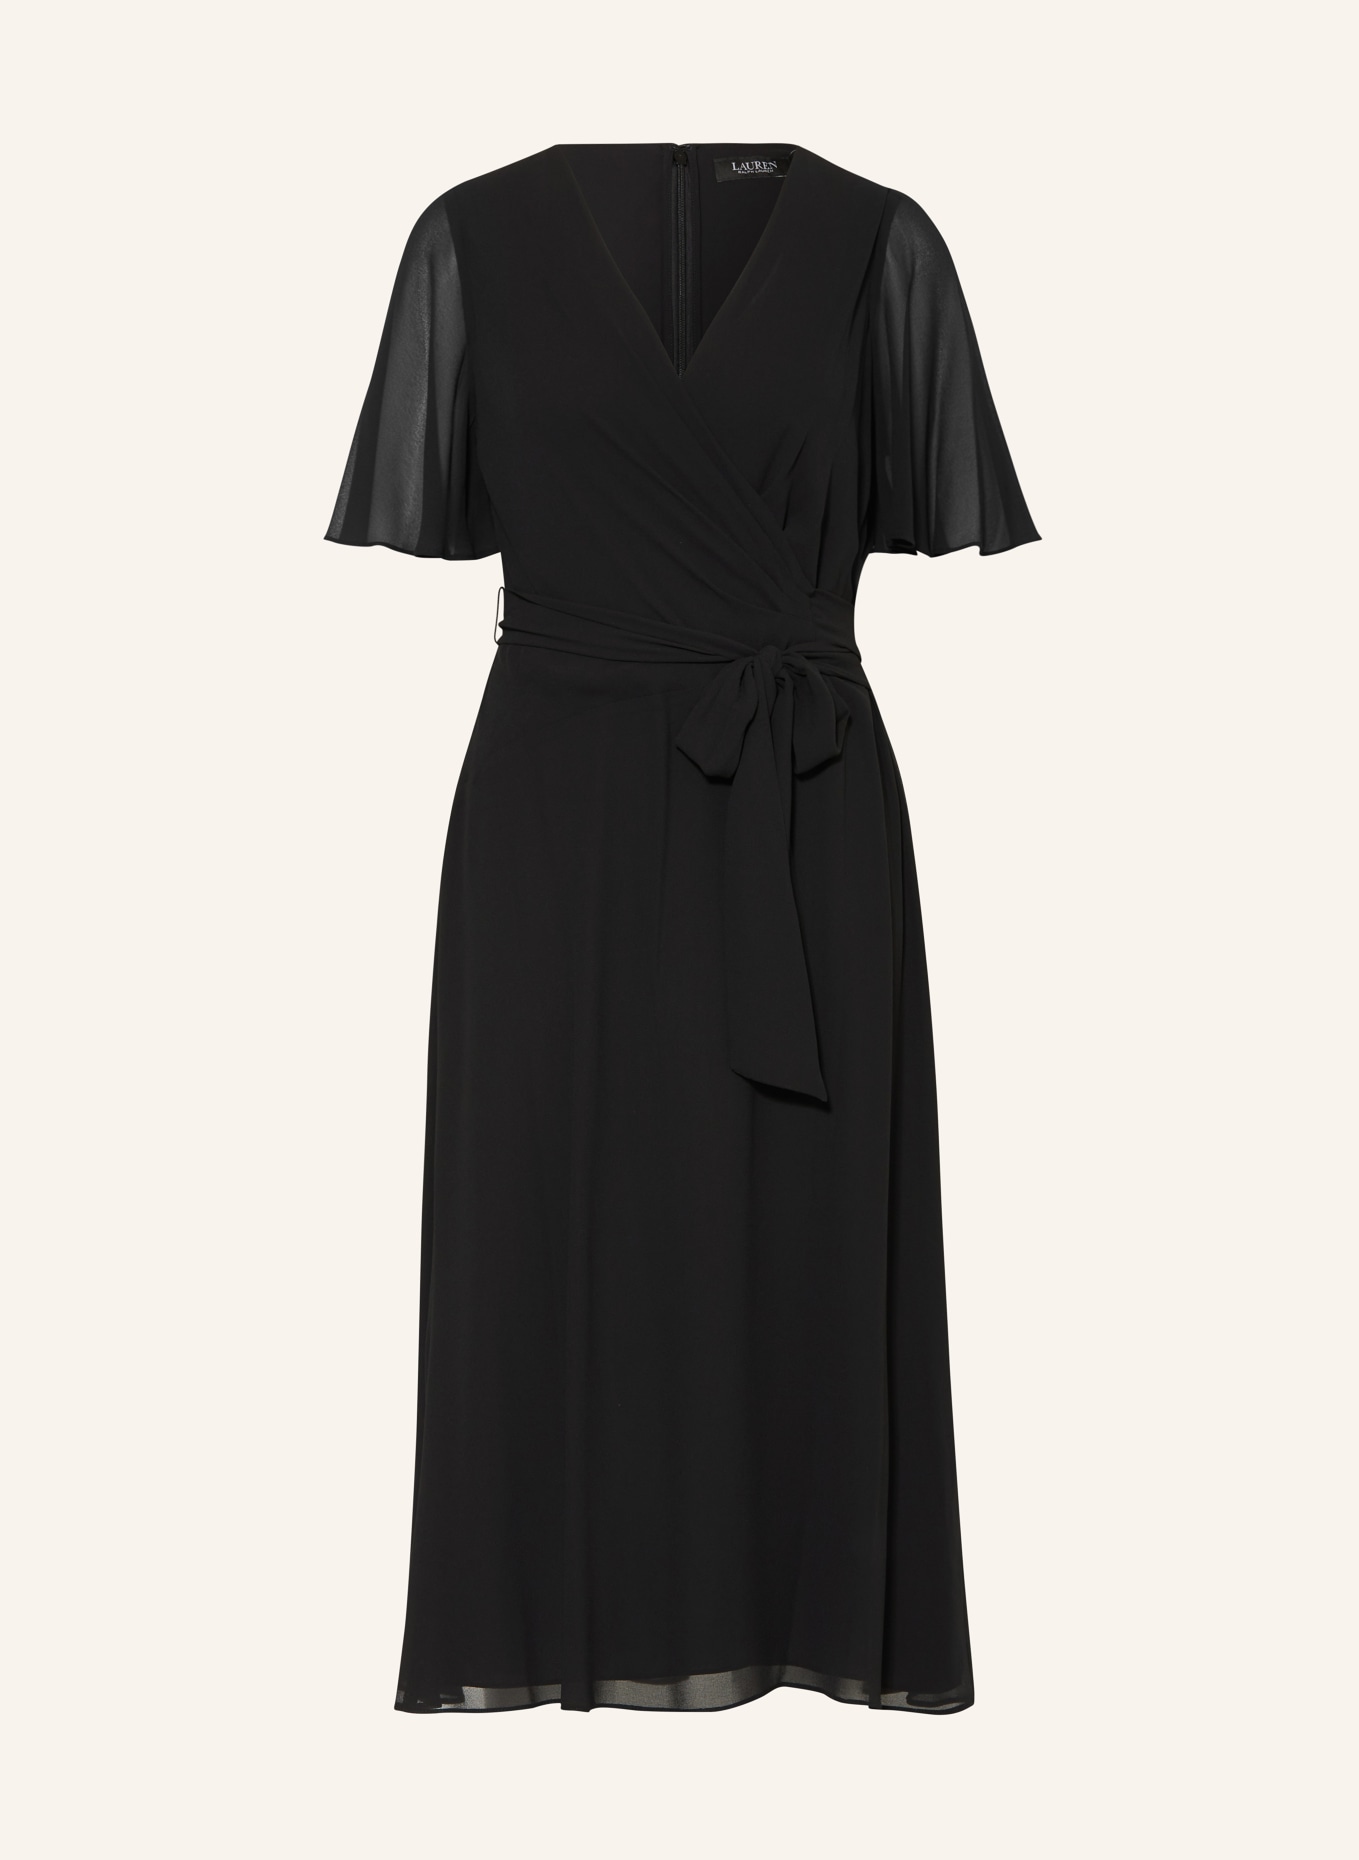 LAUREN RALPH LAUREN Dress in wrap look, Color: BLACK (Image 1)